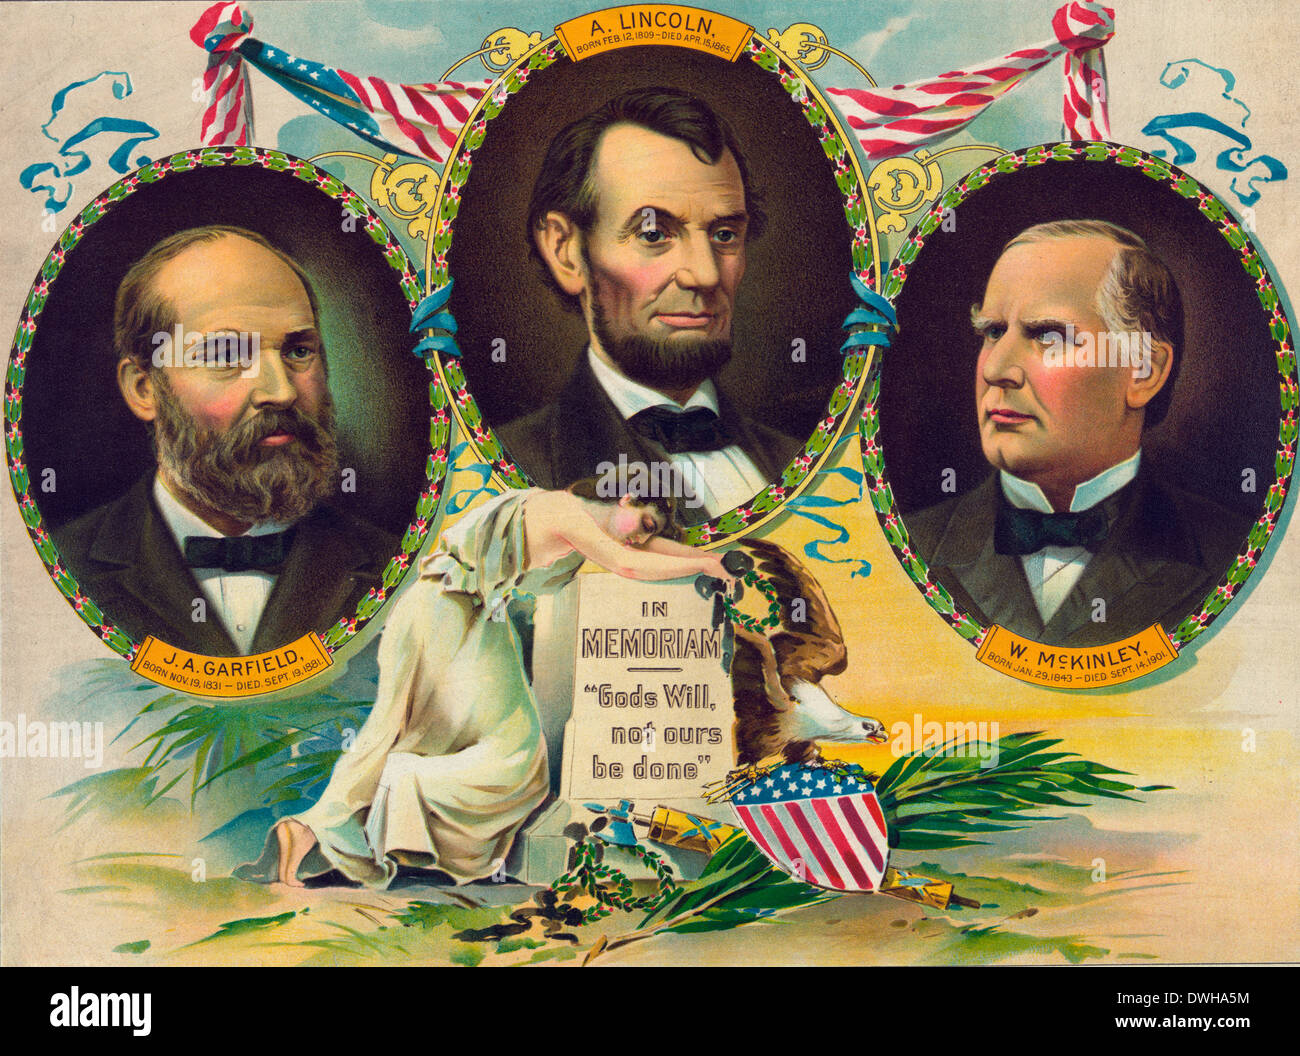 In memoriam. 'La volonté de Dieu, pas à nous être fait' 1901 - Lincoln, Garfield et McKinley - assassiné les présidents américains Banque D'Images